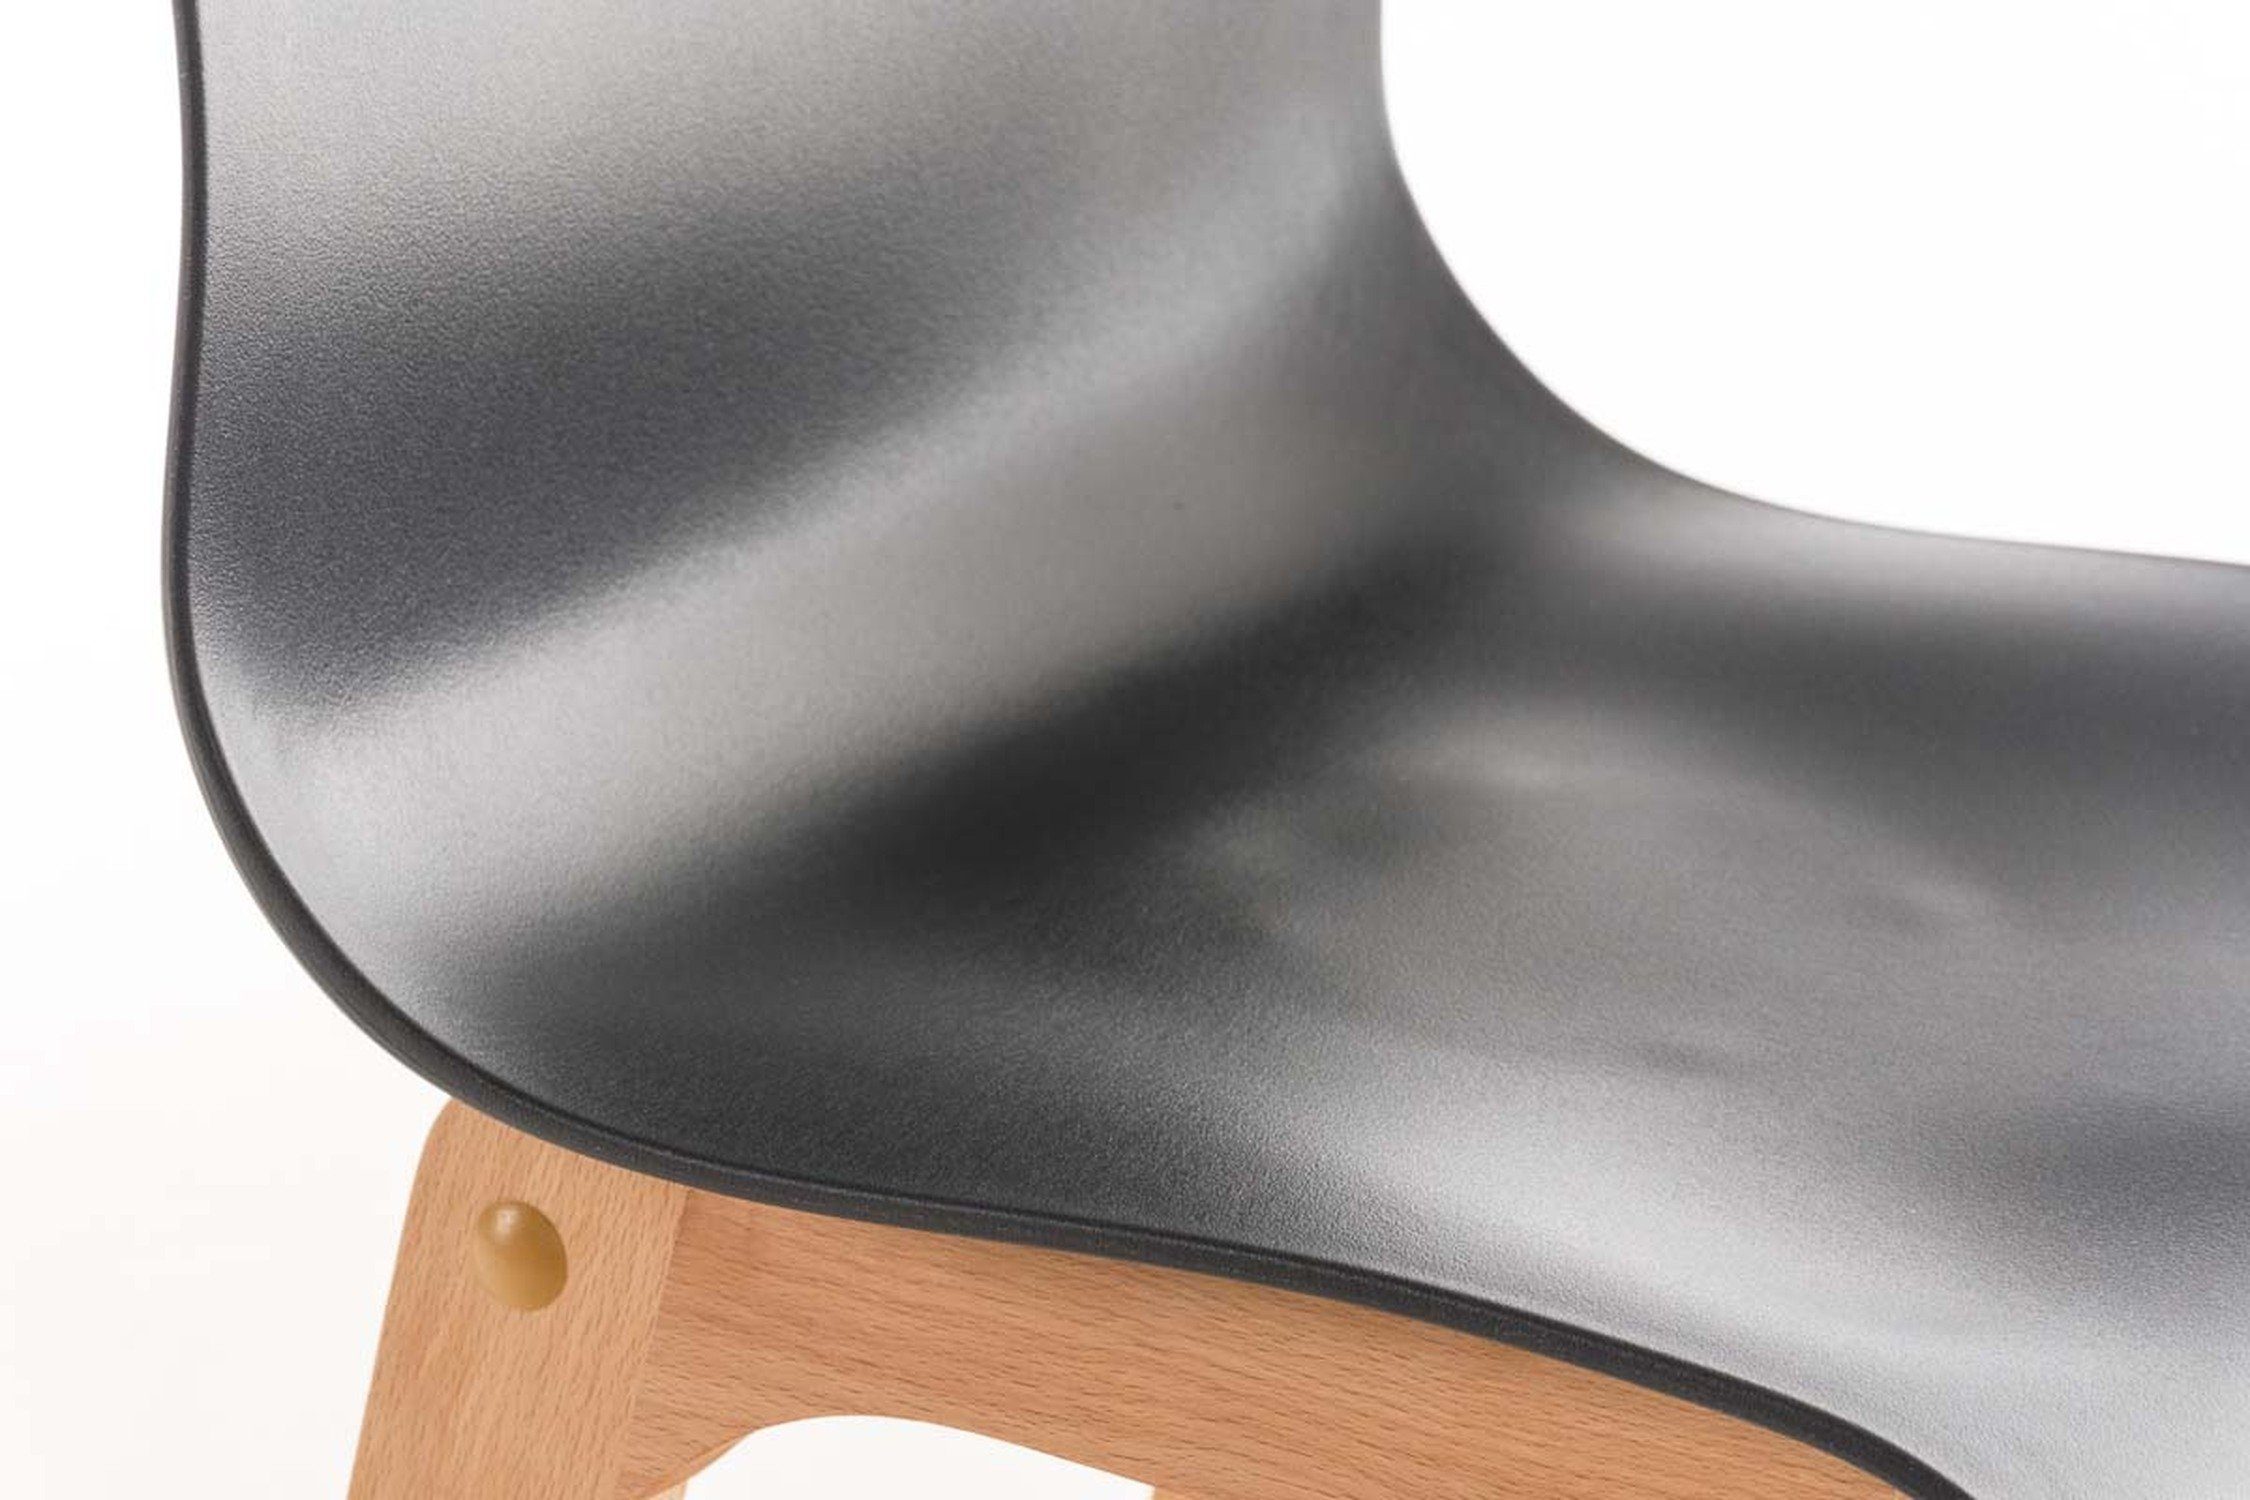 Gestell Metall Fußstütze - & Grau Theke Sitzfläche: - hellbraun für (mit Hoover Tresenhocker), Küche Barhocker Hocker Kunststoff - TPFLiving